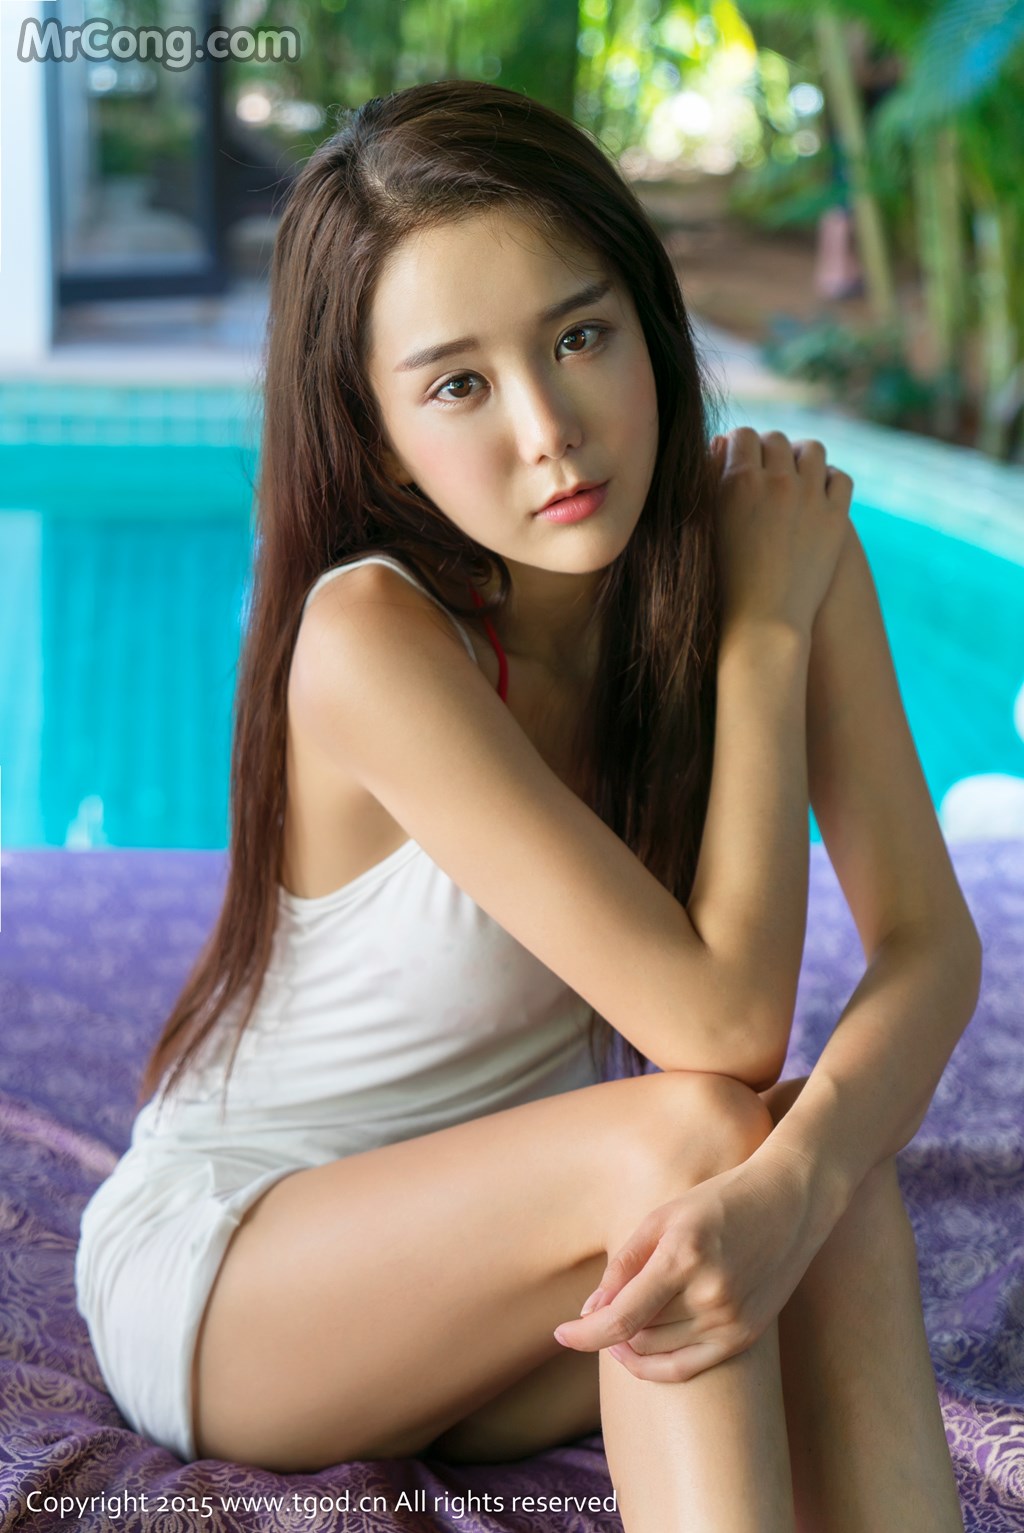 TGOD 2015-12-15: Model Xiao Jiu Vin (小 九 Vin) (31 photos)